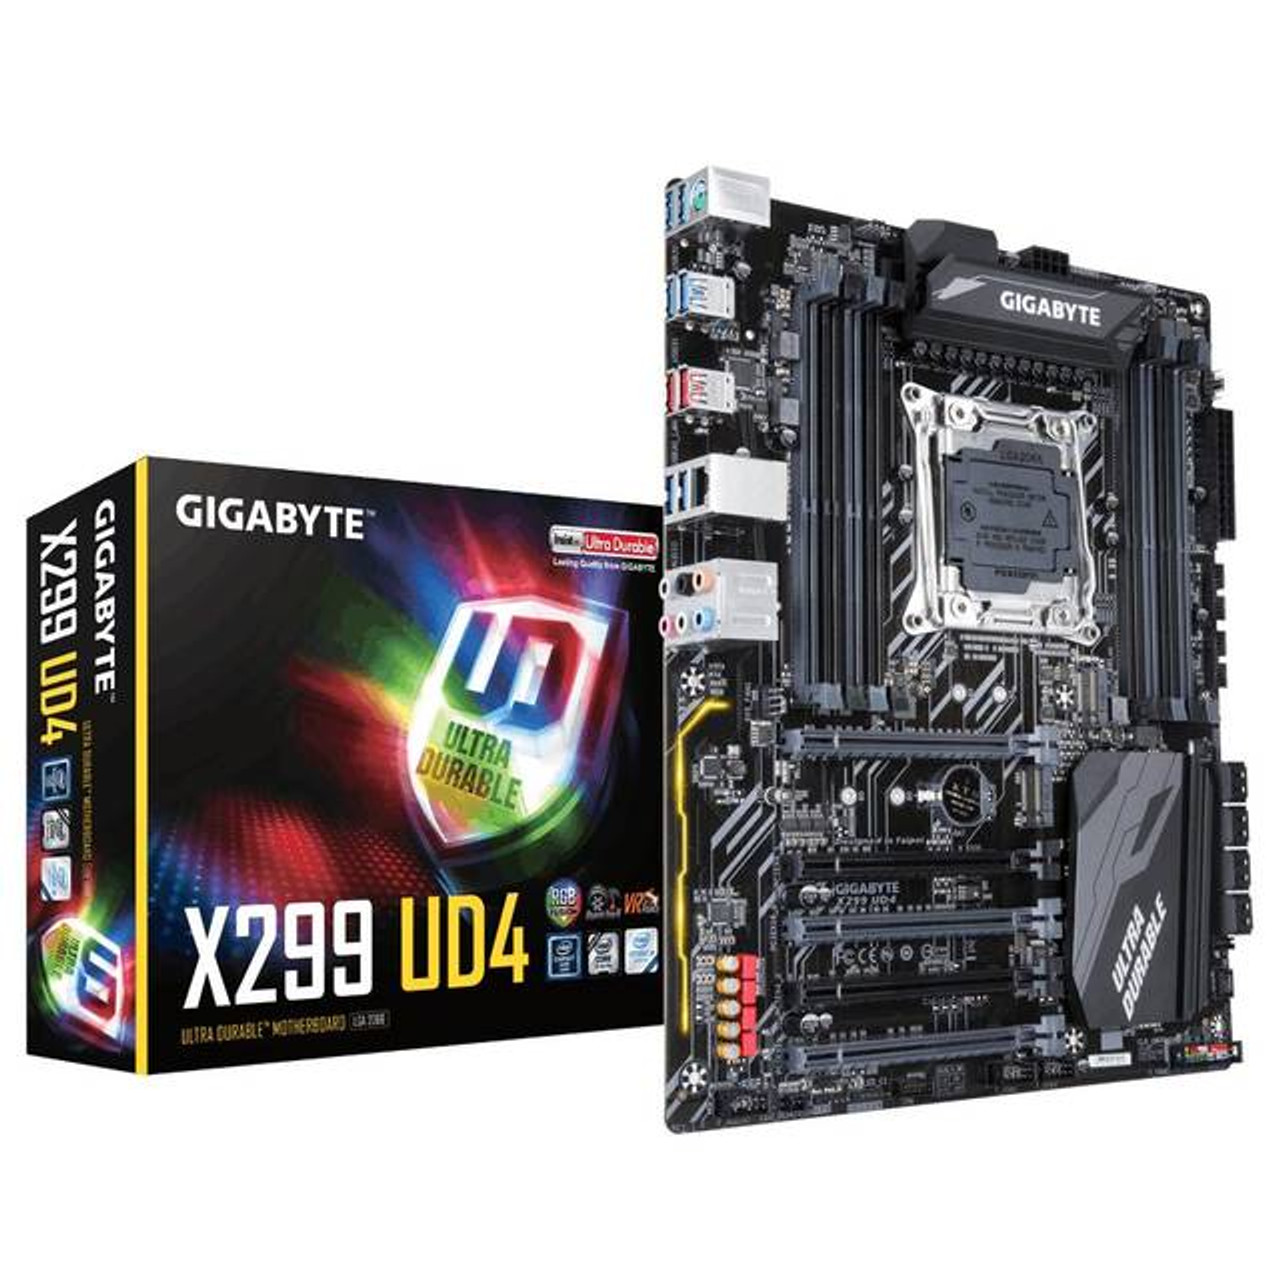 GIGABYTE X299 UD4 LGA2066/ Intel X299/ DDR4/ Quad CrossFireX & Quad SLI/ SATA3&USB3.1/ M.2/ A&GbE/ ATX Motherboard